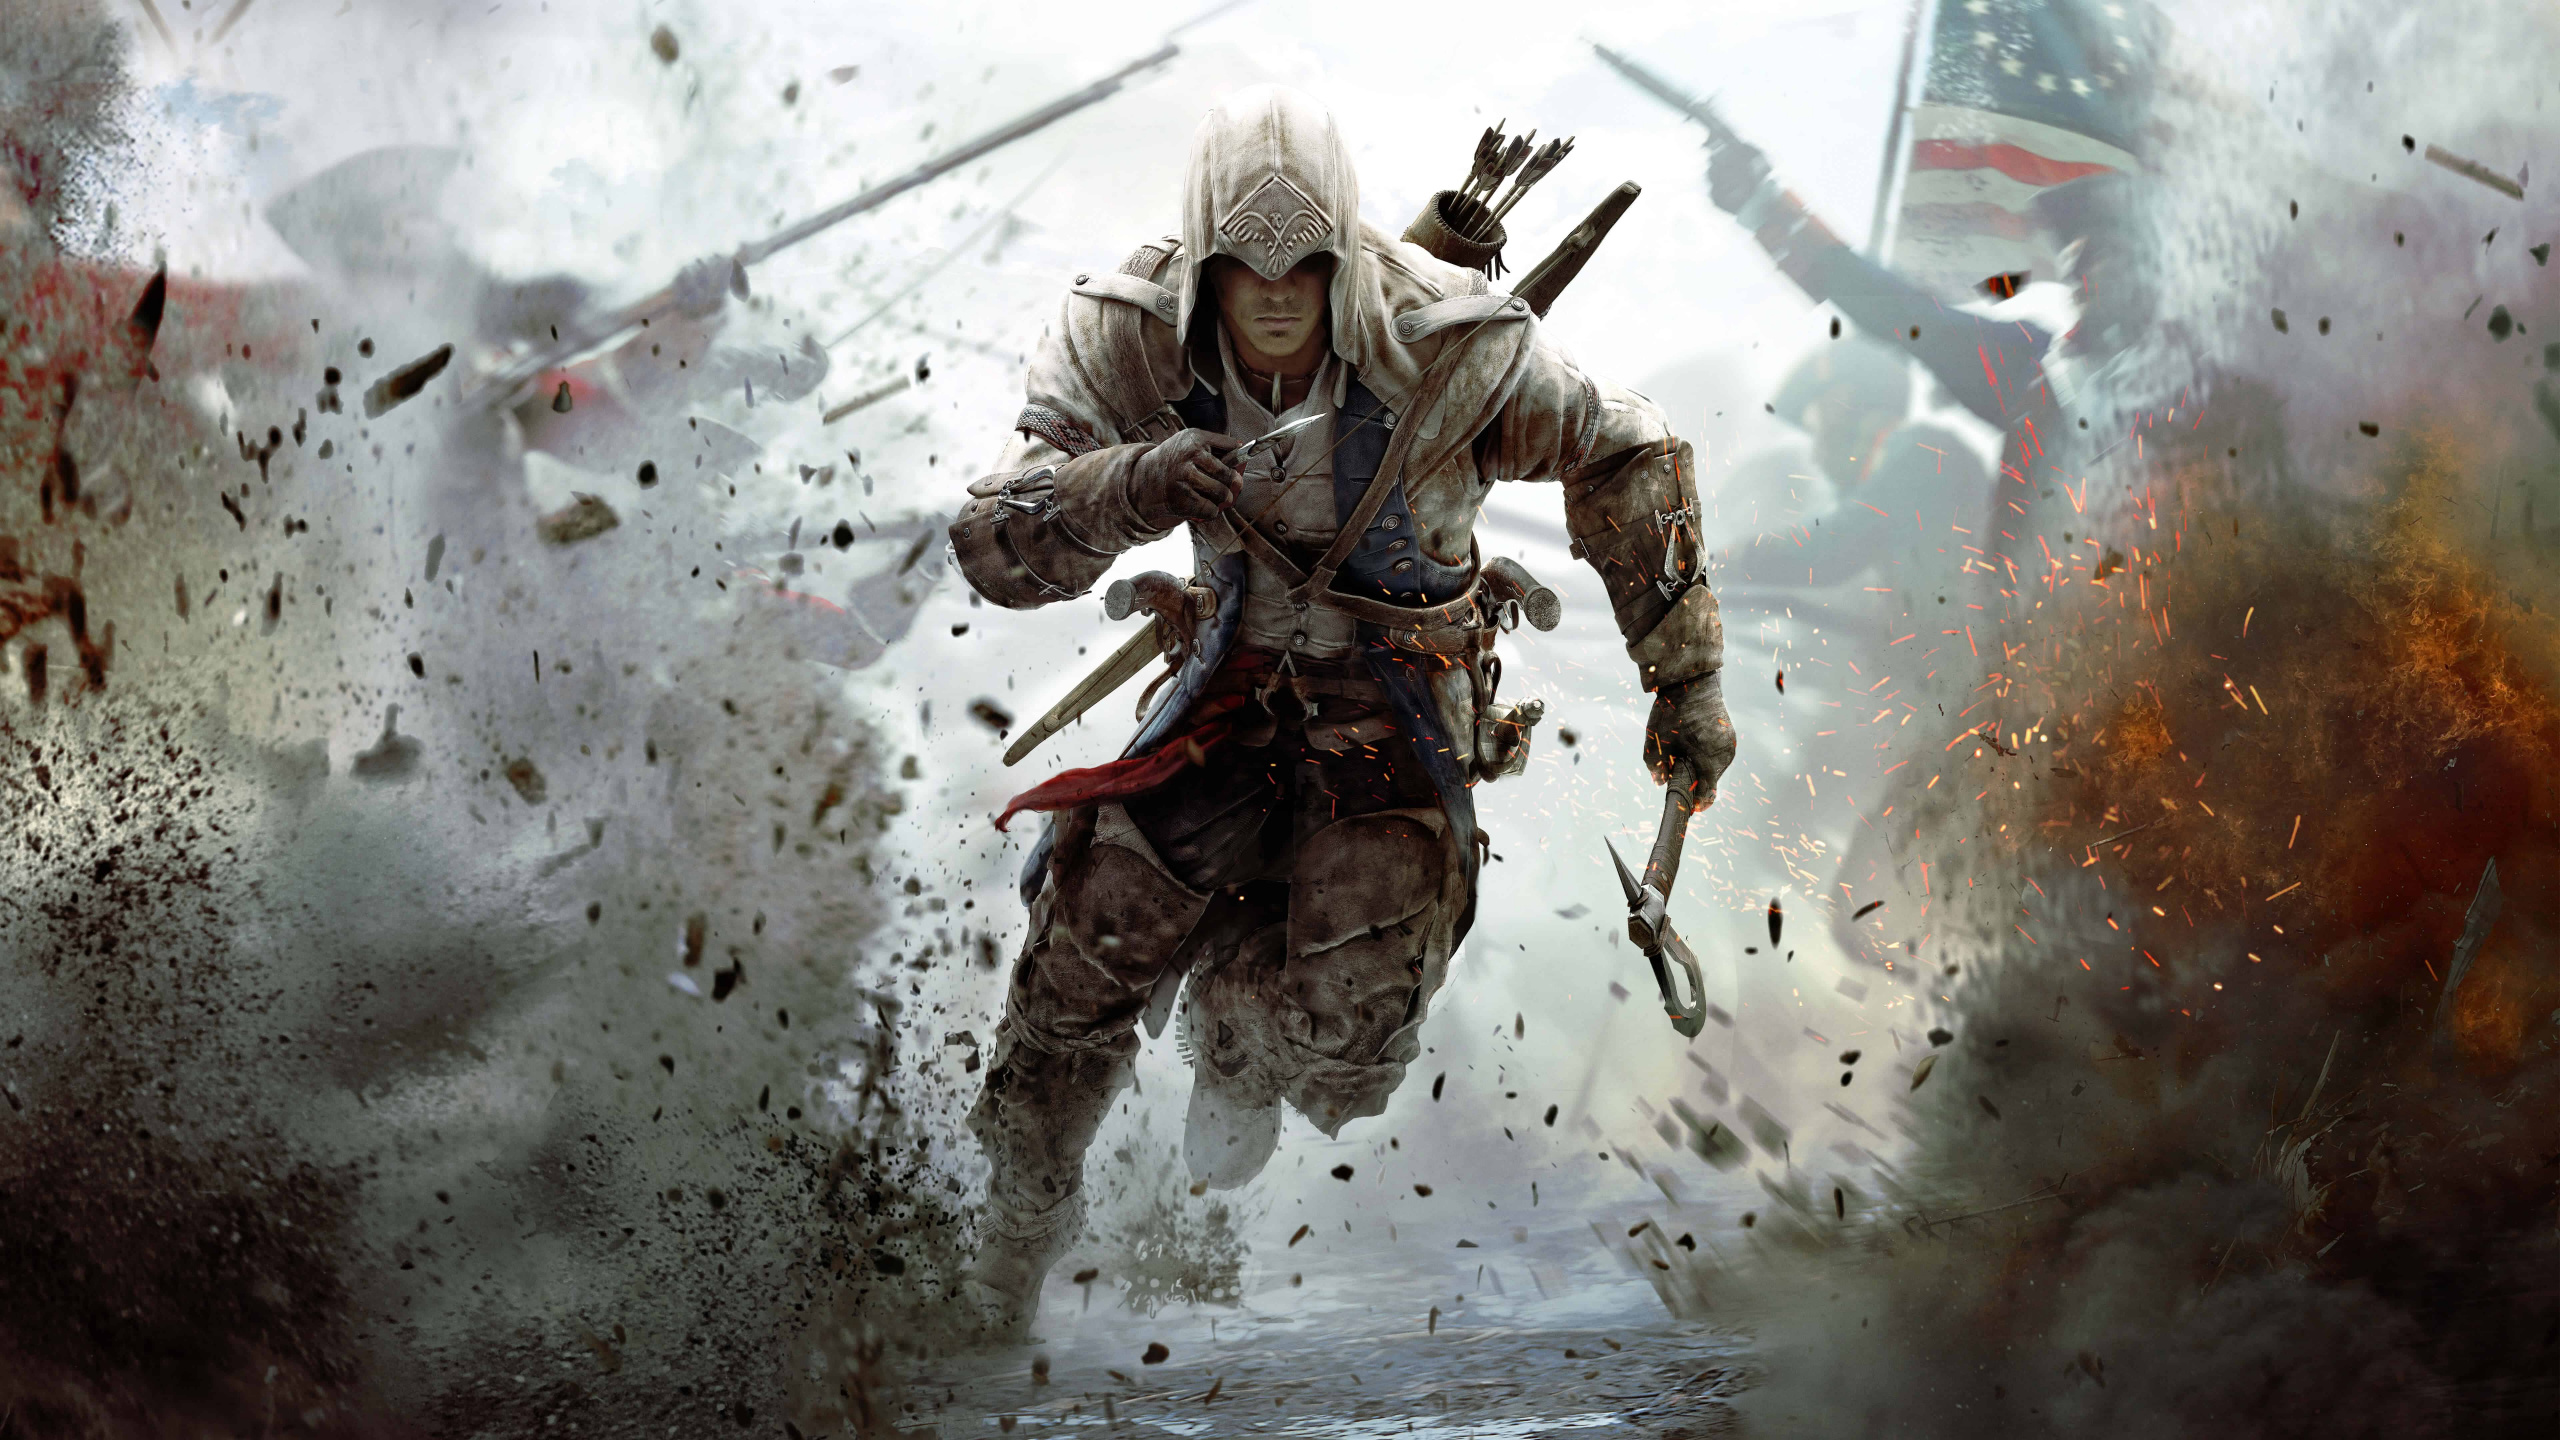 Assassins Creed III, Ubisoft, Vidéo, Les Jeux Vidéo, Assassins Creed Origines. Wallpaper in 2560x1440 Resolution